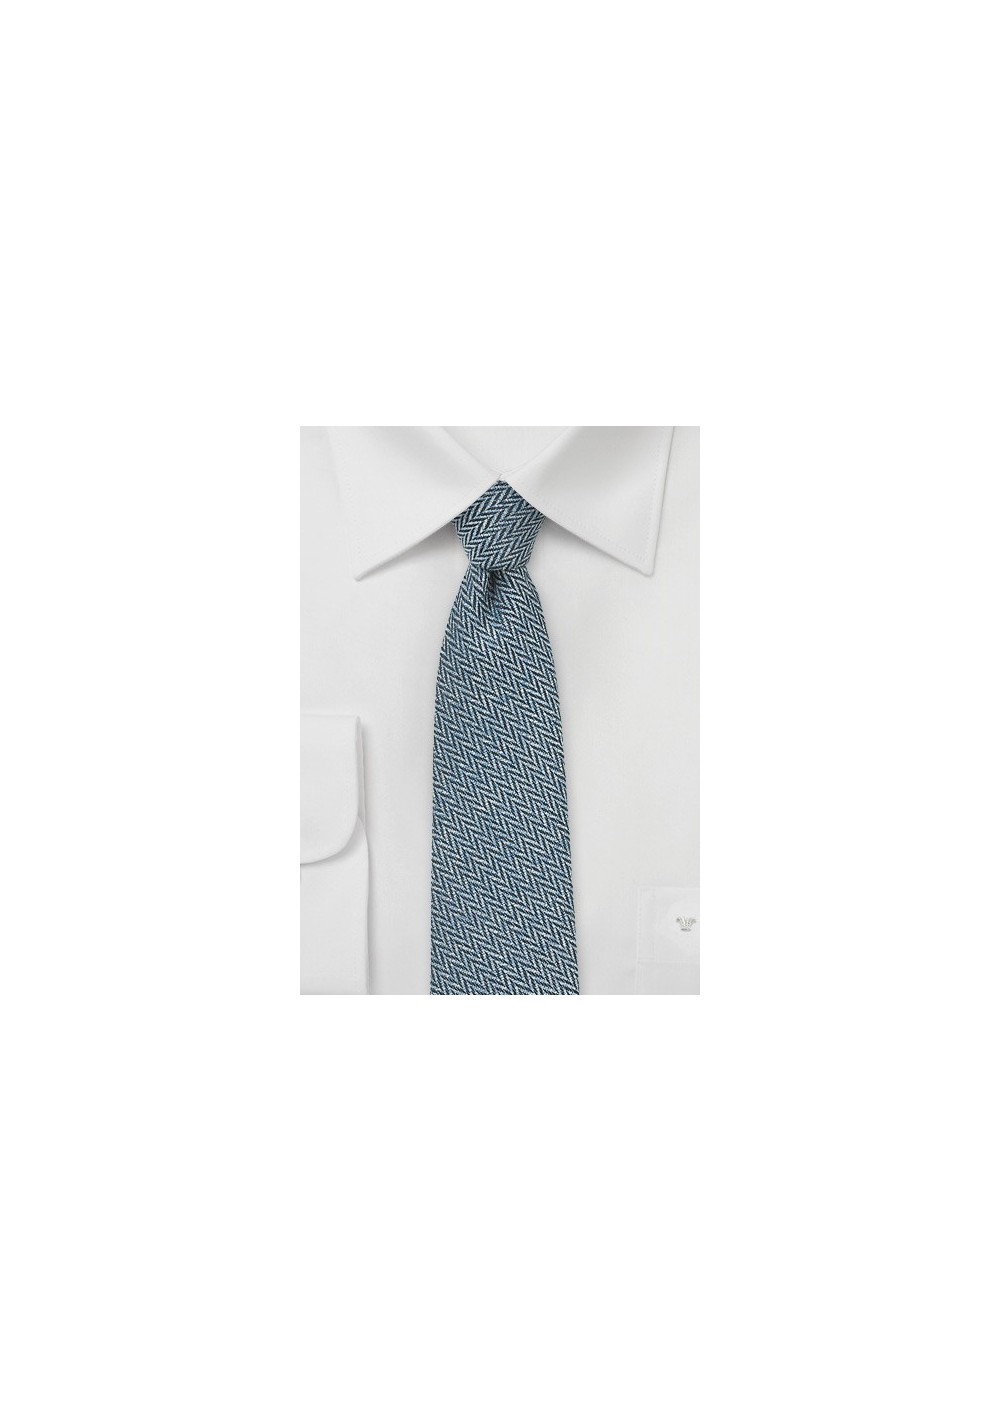 Denim Blue Skinny Tie with Herringbone